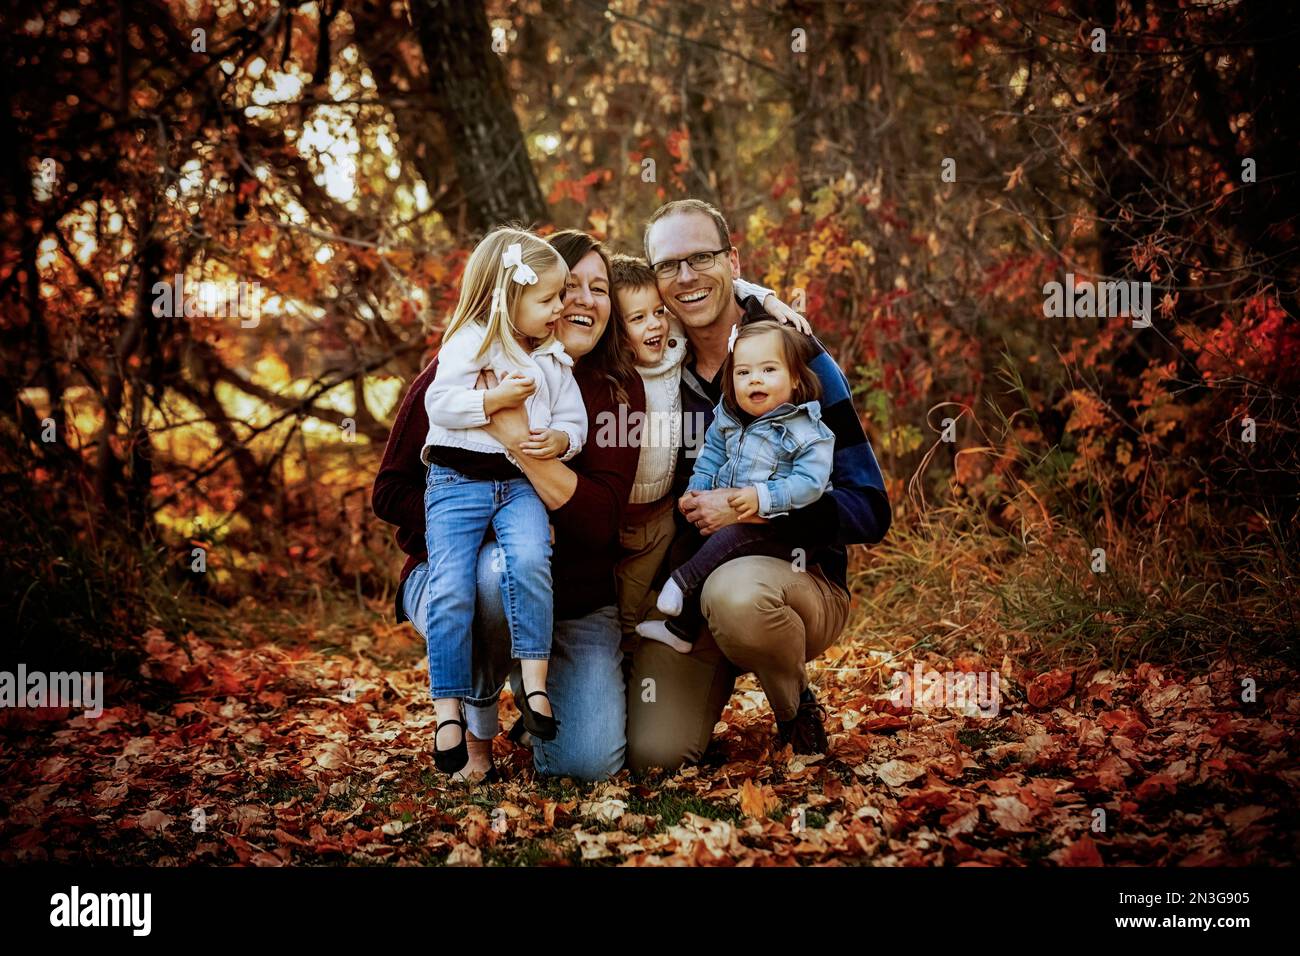 Porträt einer jungen Familie mit drei Kindern, jüngste Tochter mit Down-Syndrom, in einem Stadtpark während der Herbstsaison Stockfoto